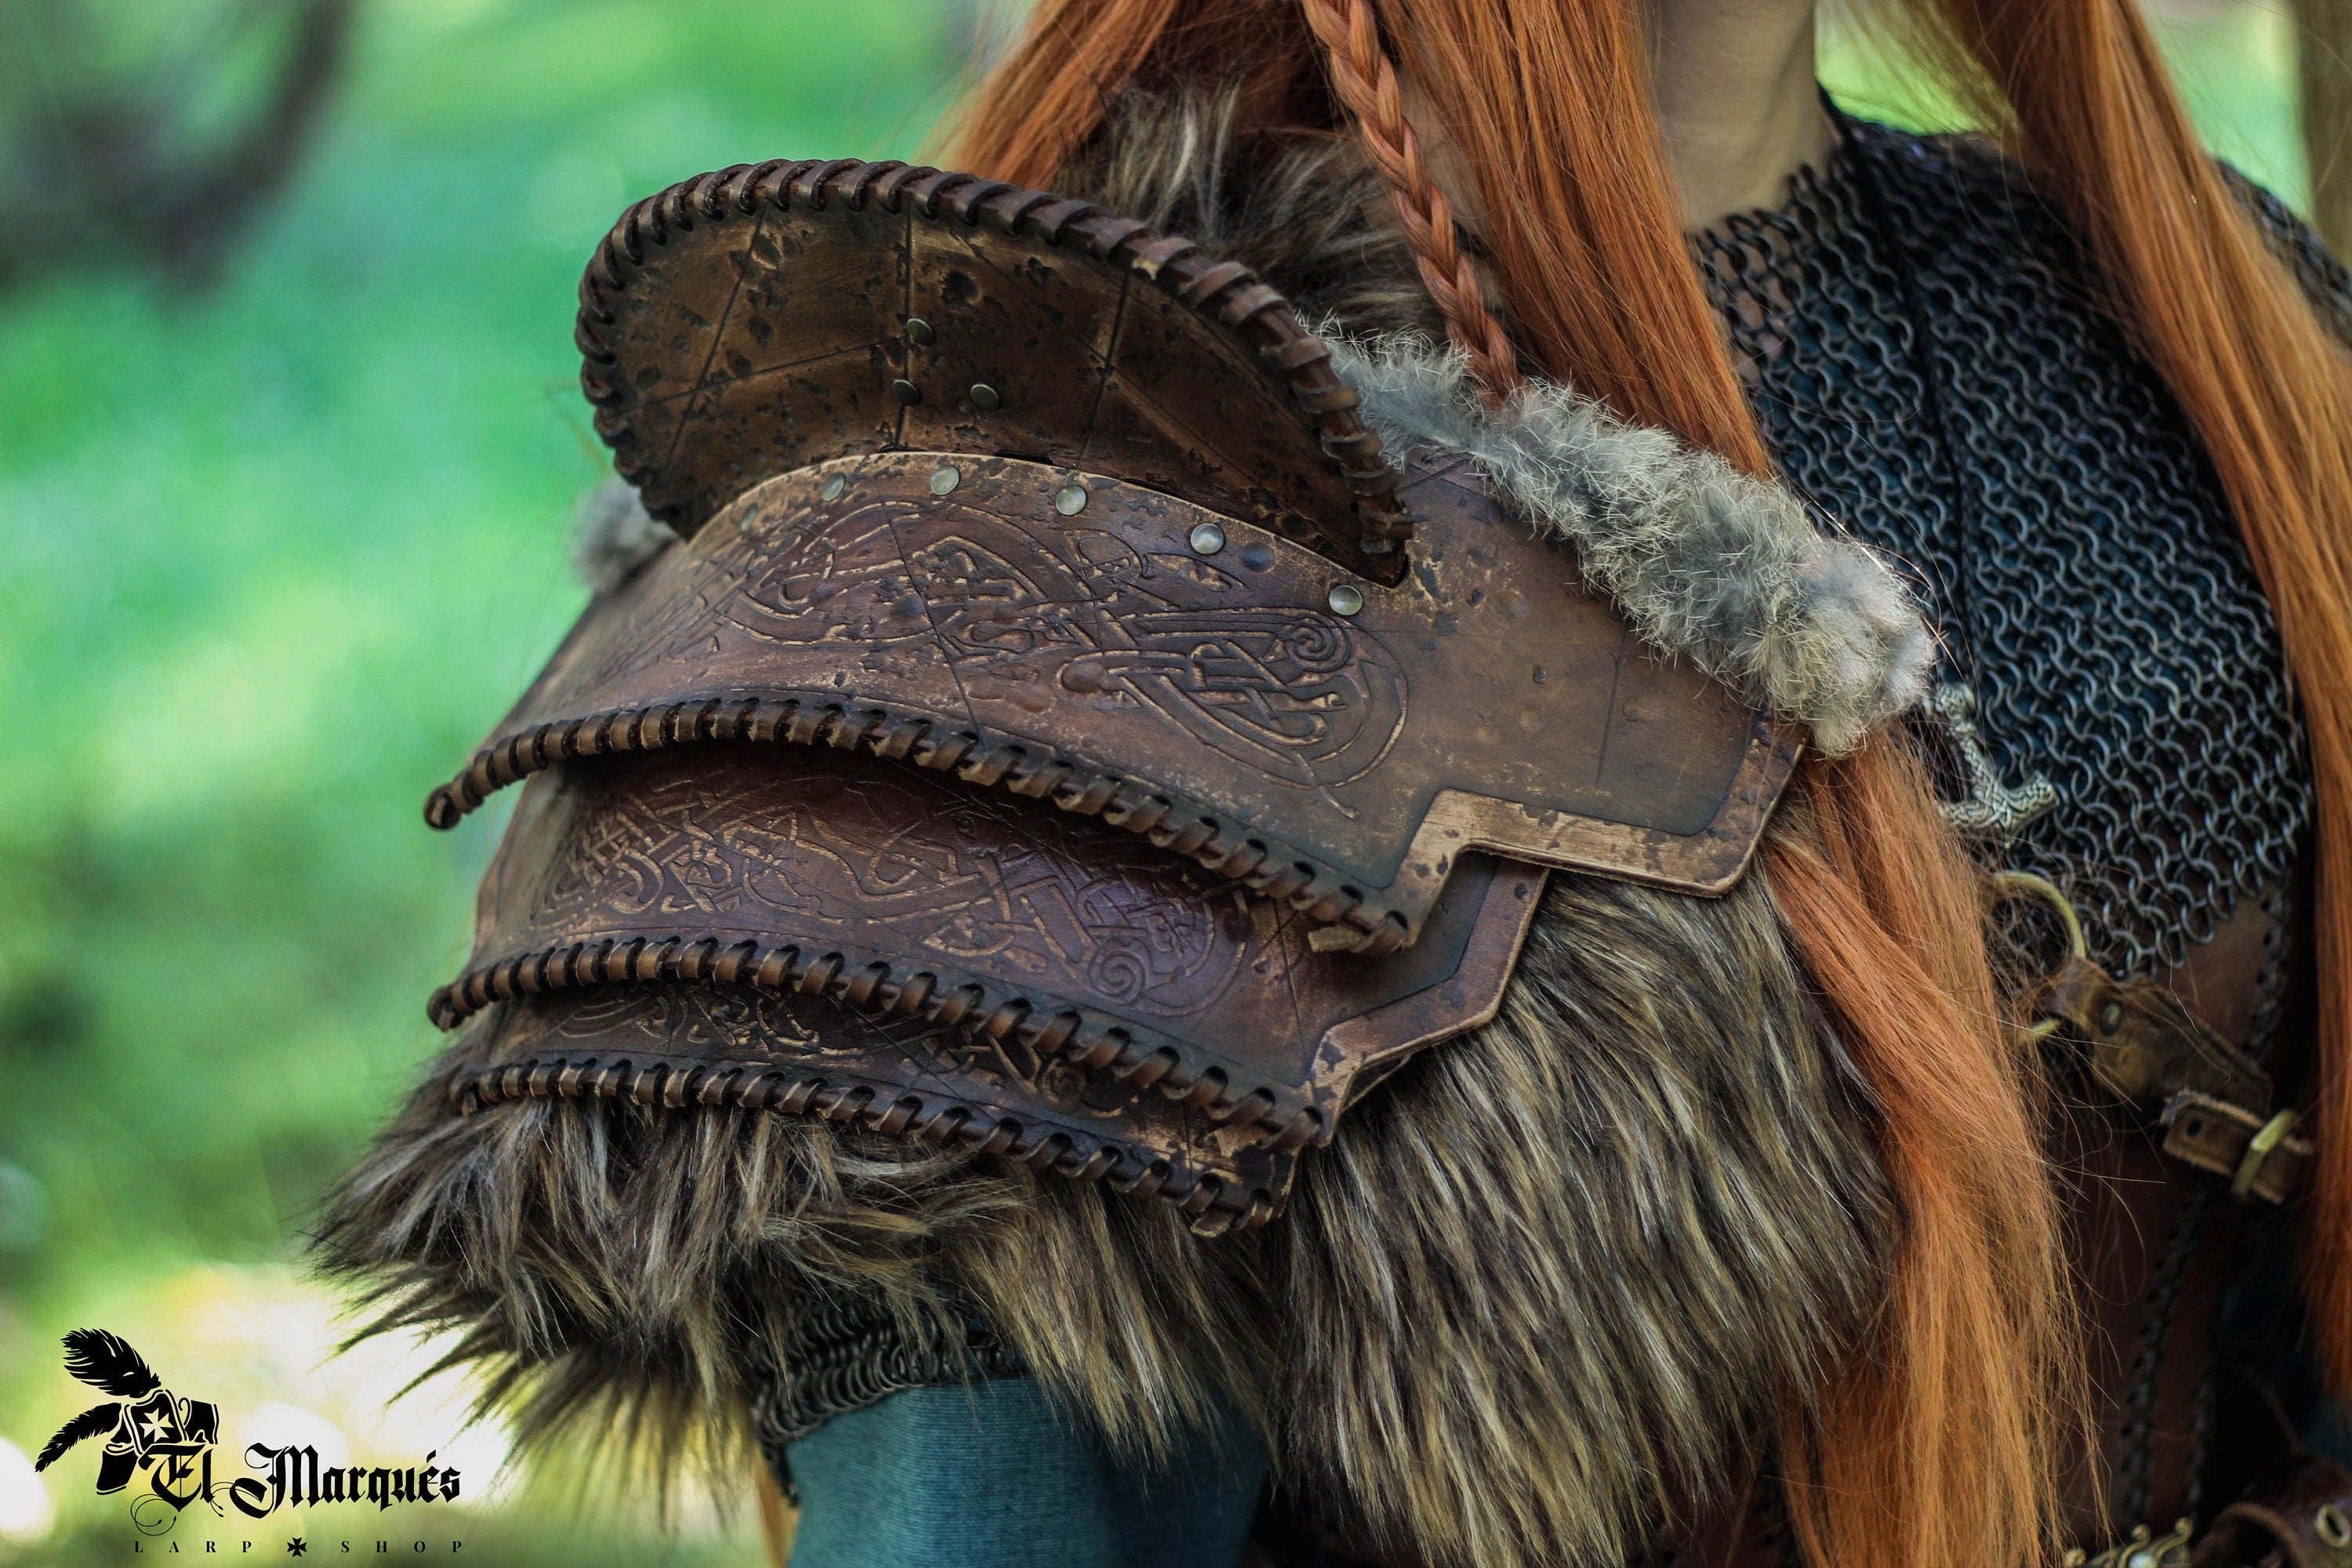 Durio Armadura vikinga con armadura de cuero en relieve, disfraz de vikingo,  retro, medieval, armadura de cuero, para Larp/Cosplay : : Juguetes  y juegos